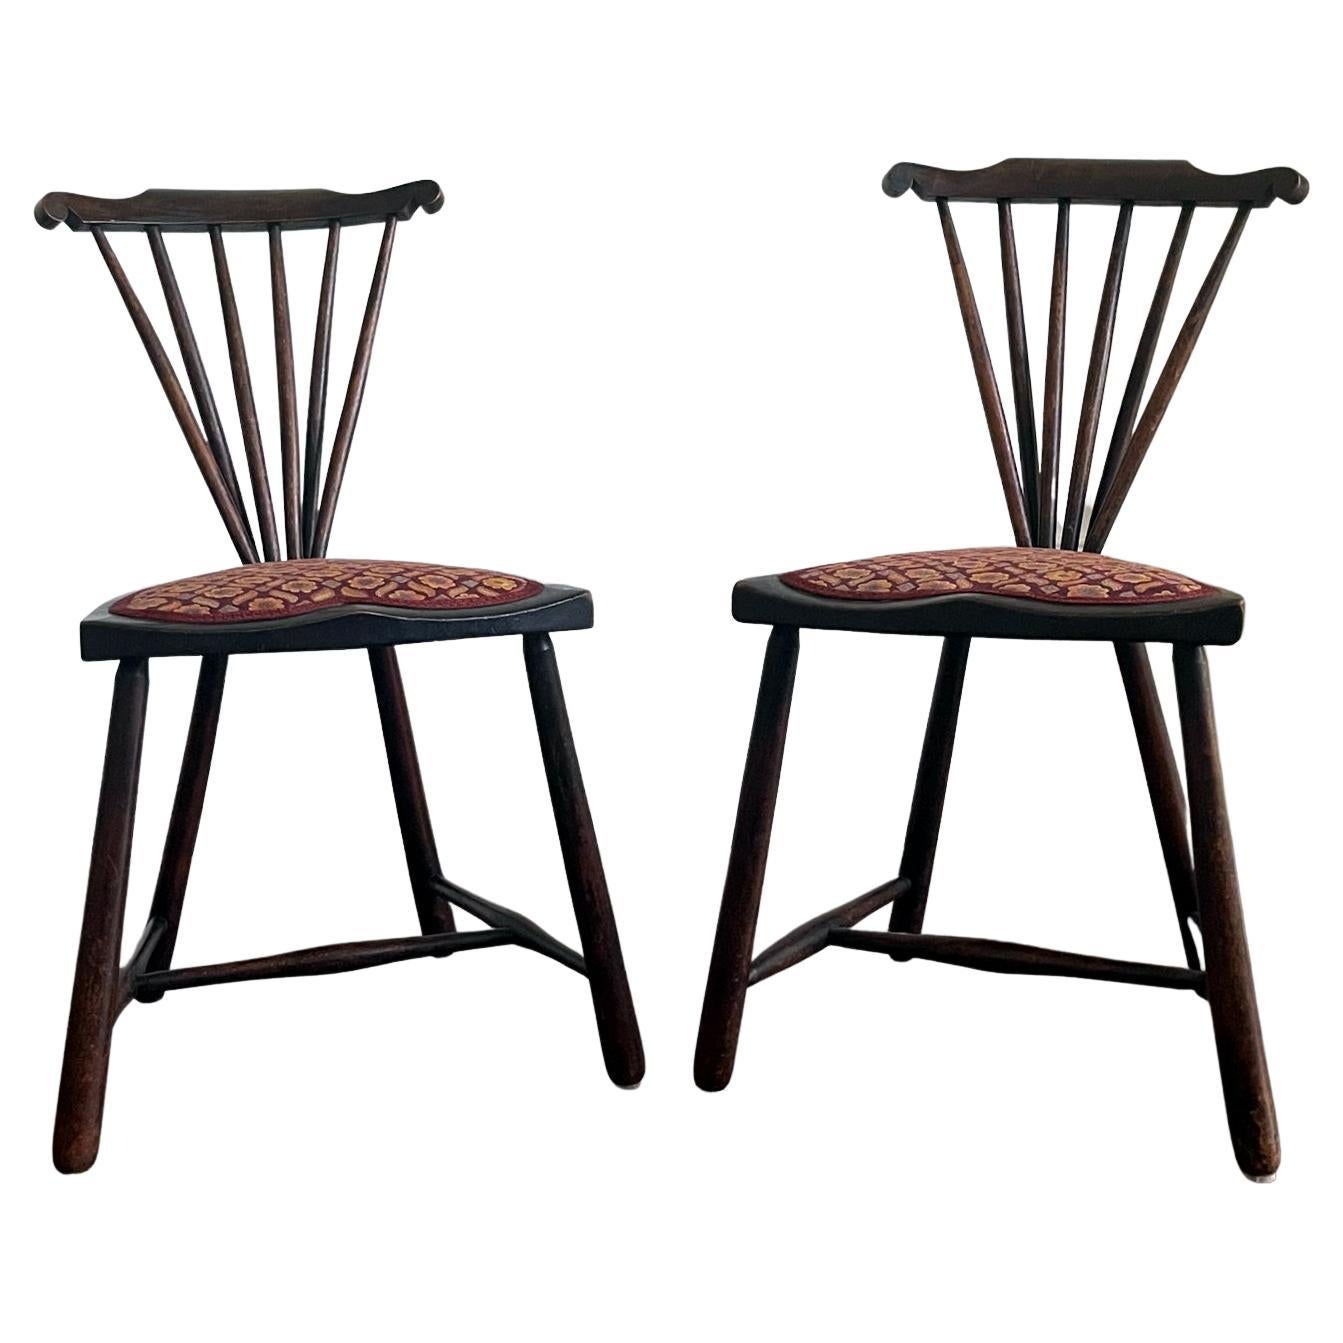 Seltenes Paar moderner Stühle der Wiener Secession von Adolf Loos